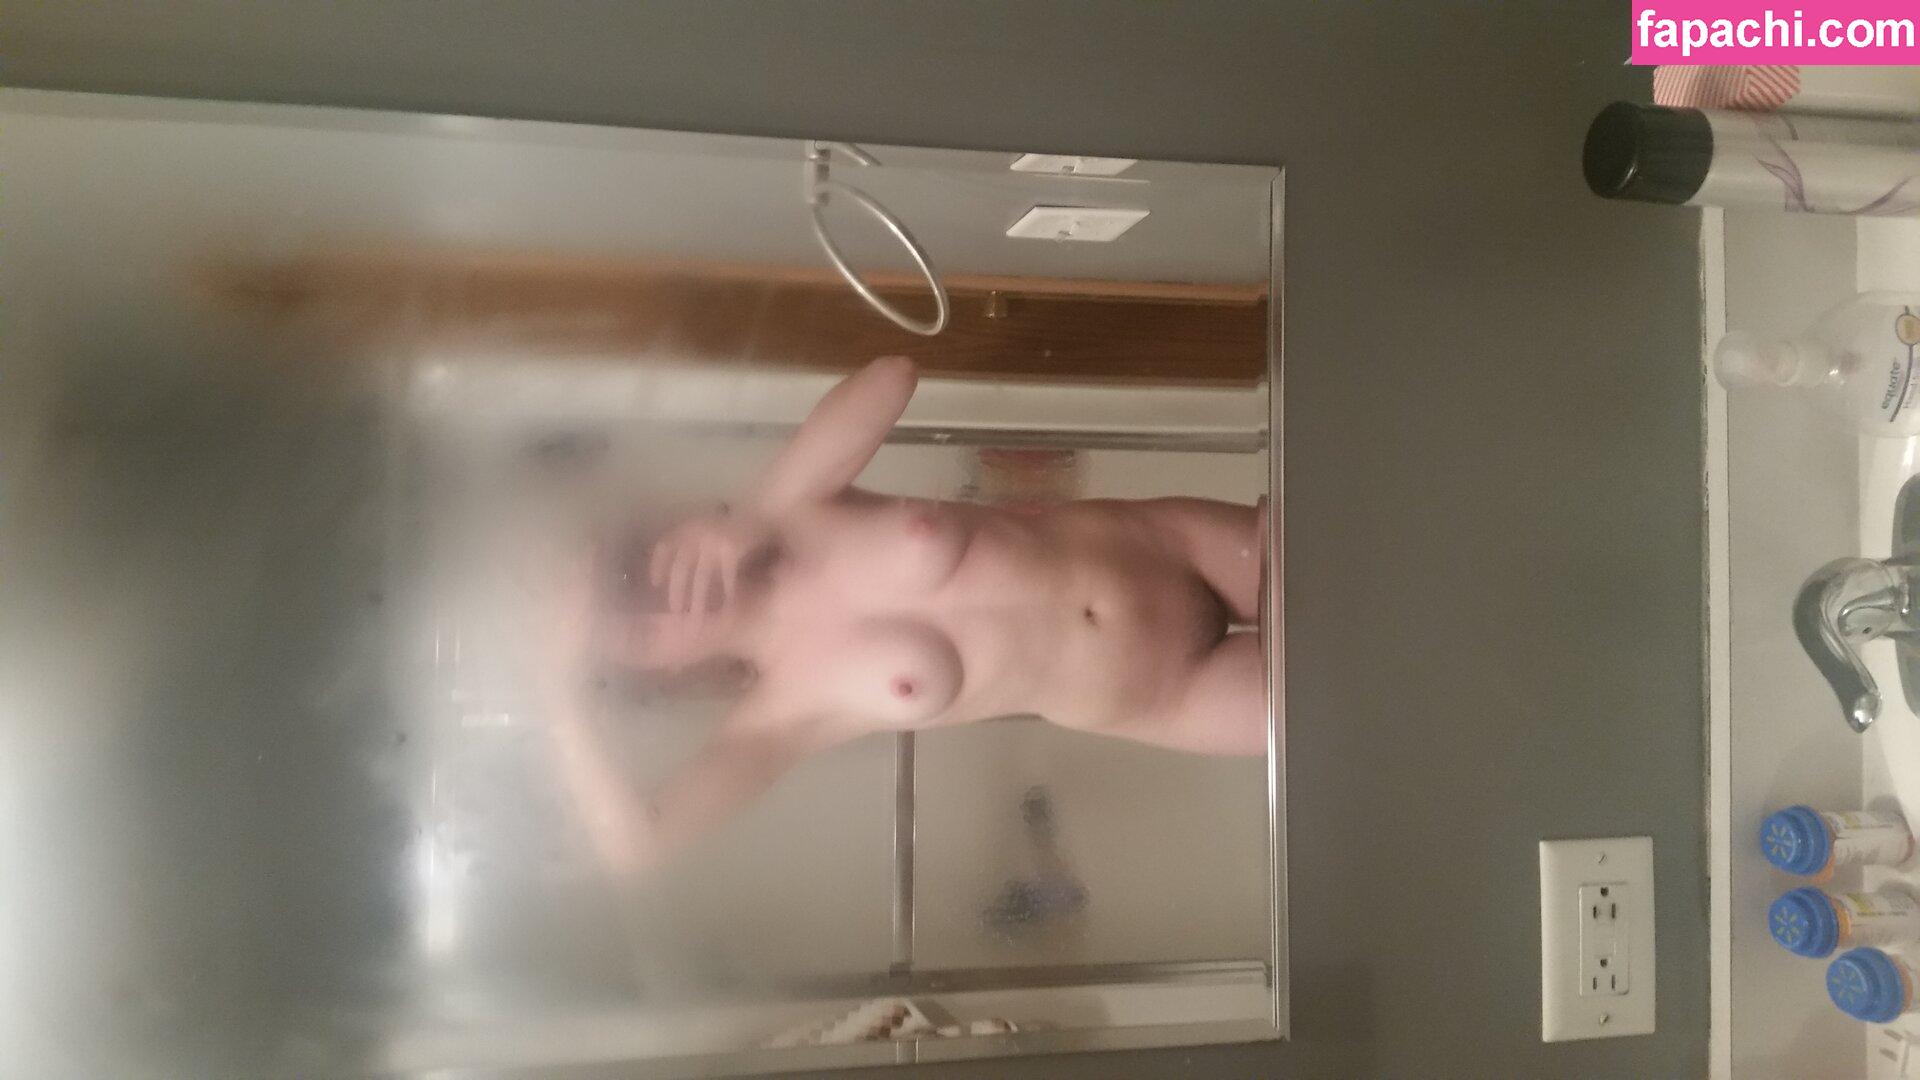 laribug / kathleeneggleton leaked nude photo #0039 from OnlyFans/Patreon